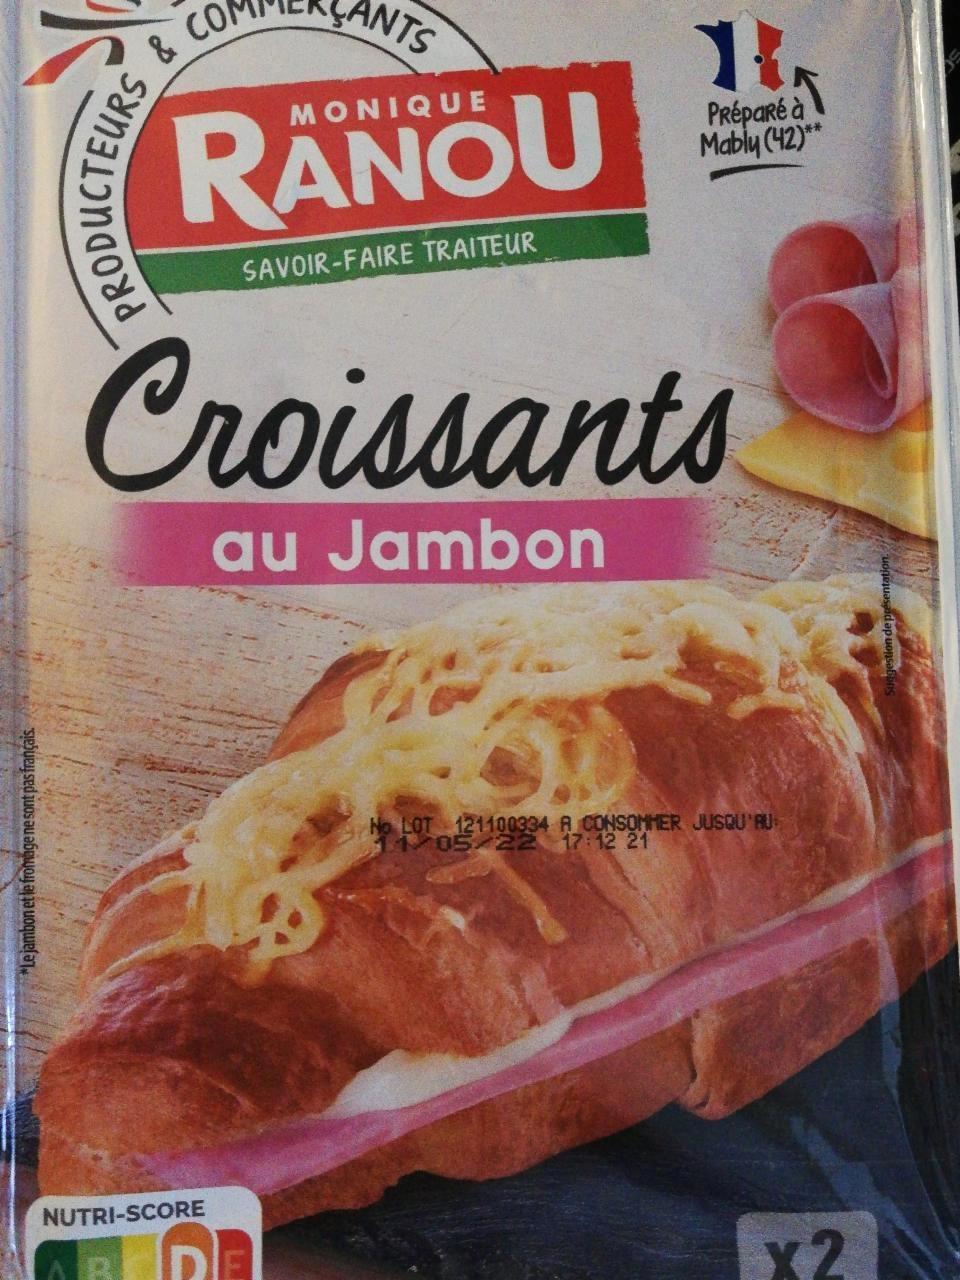 Képek - Croissants au jambon Monique Ranou